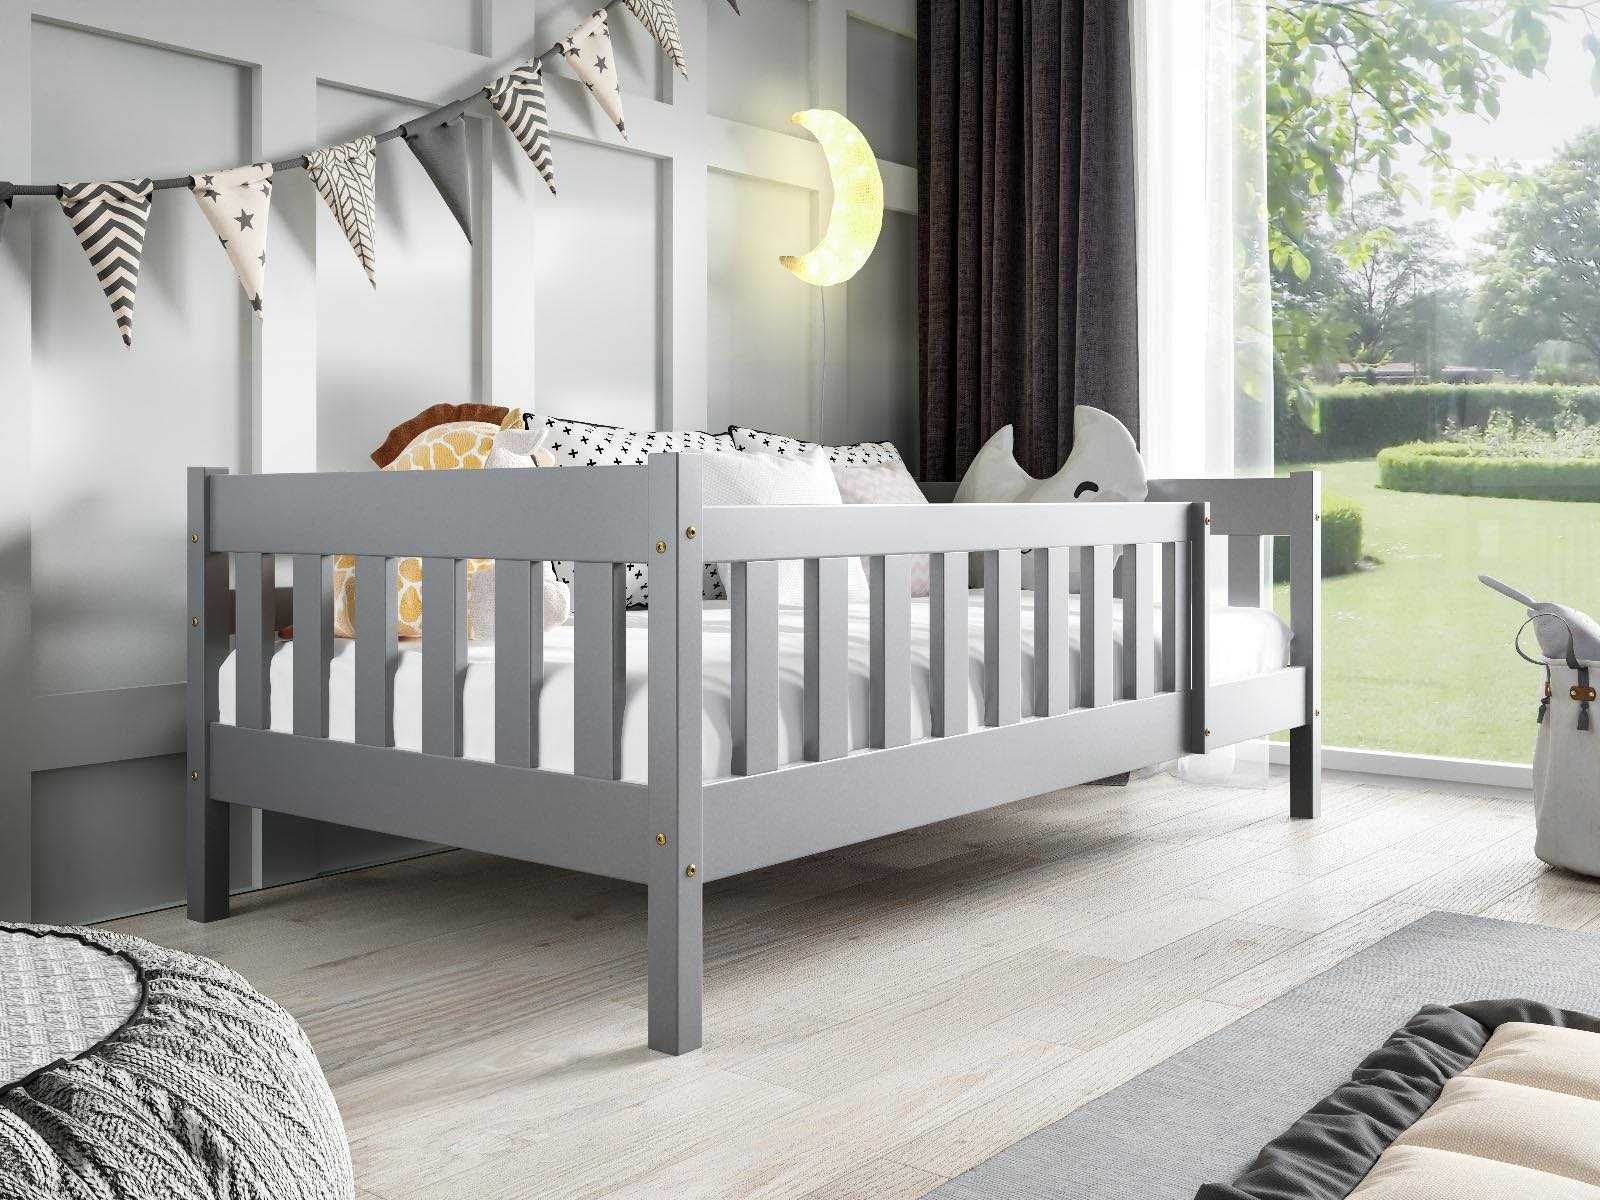 Drewniane parterowe łóżko dla dziecka POLA + materac w komplecie